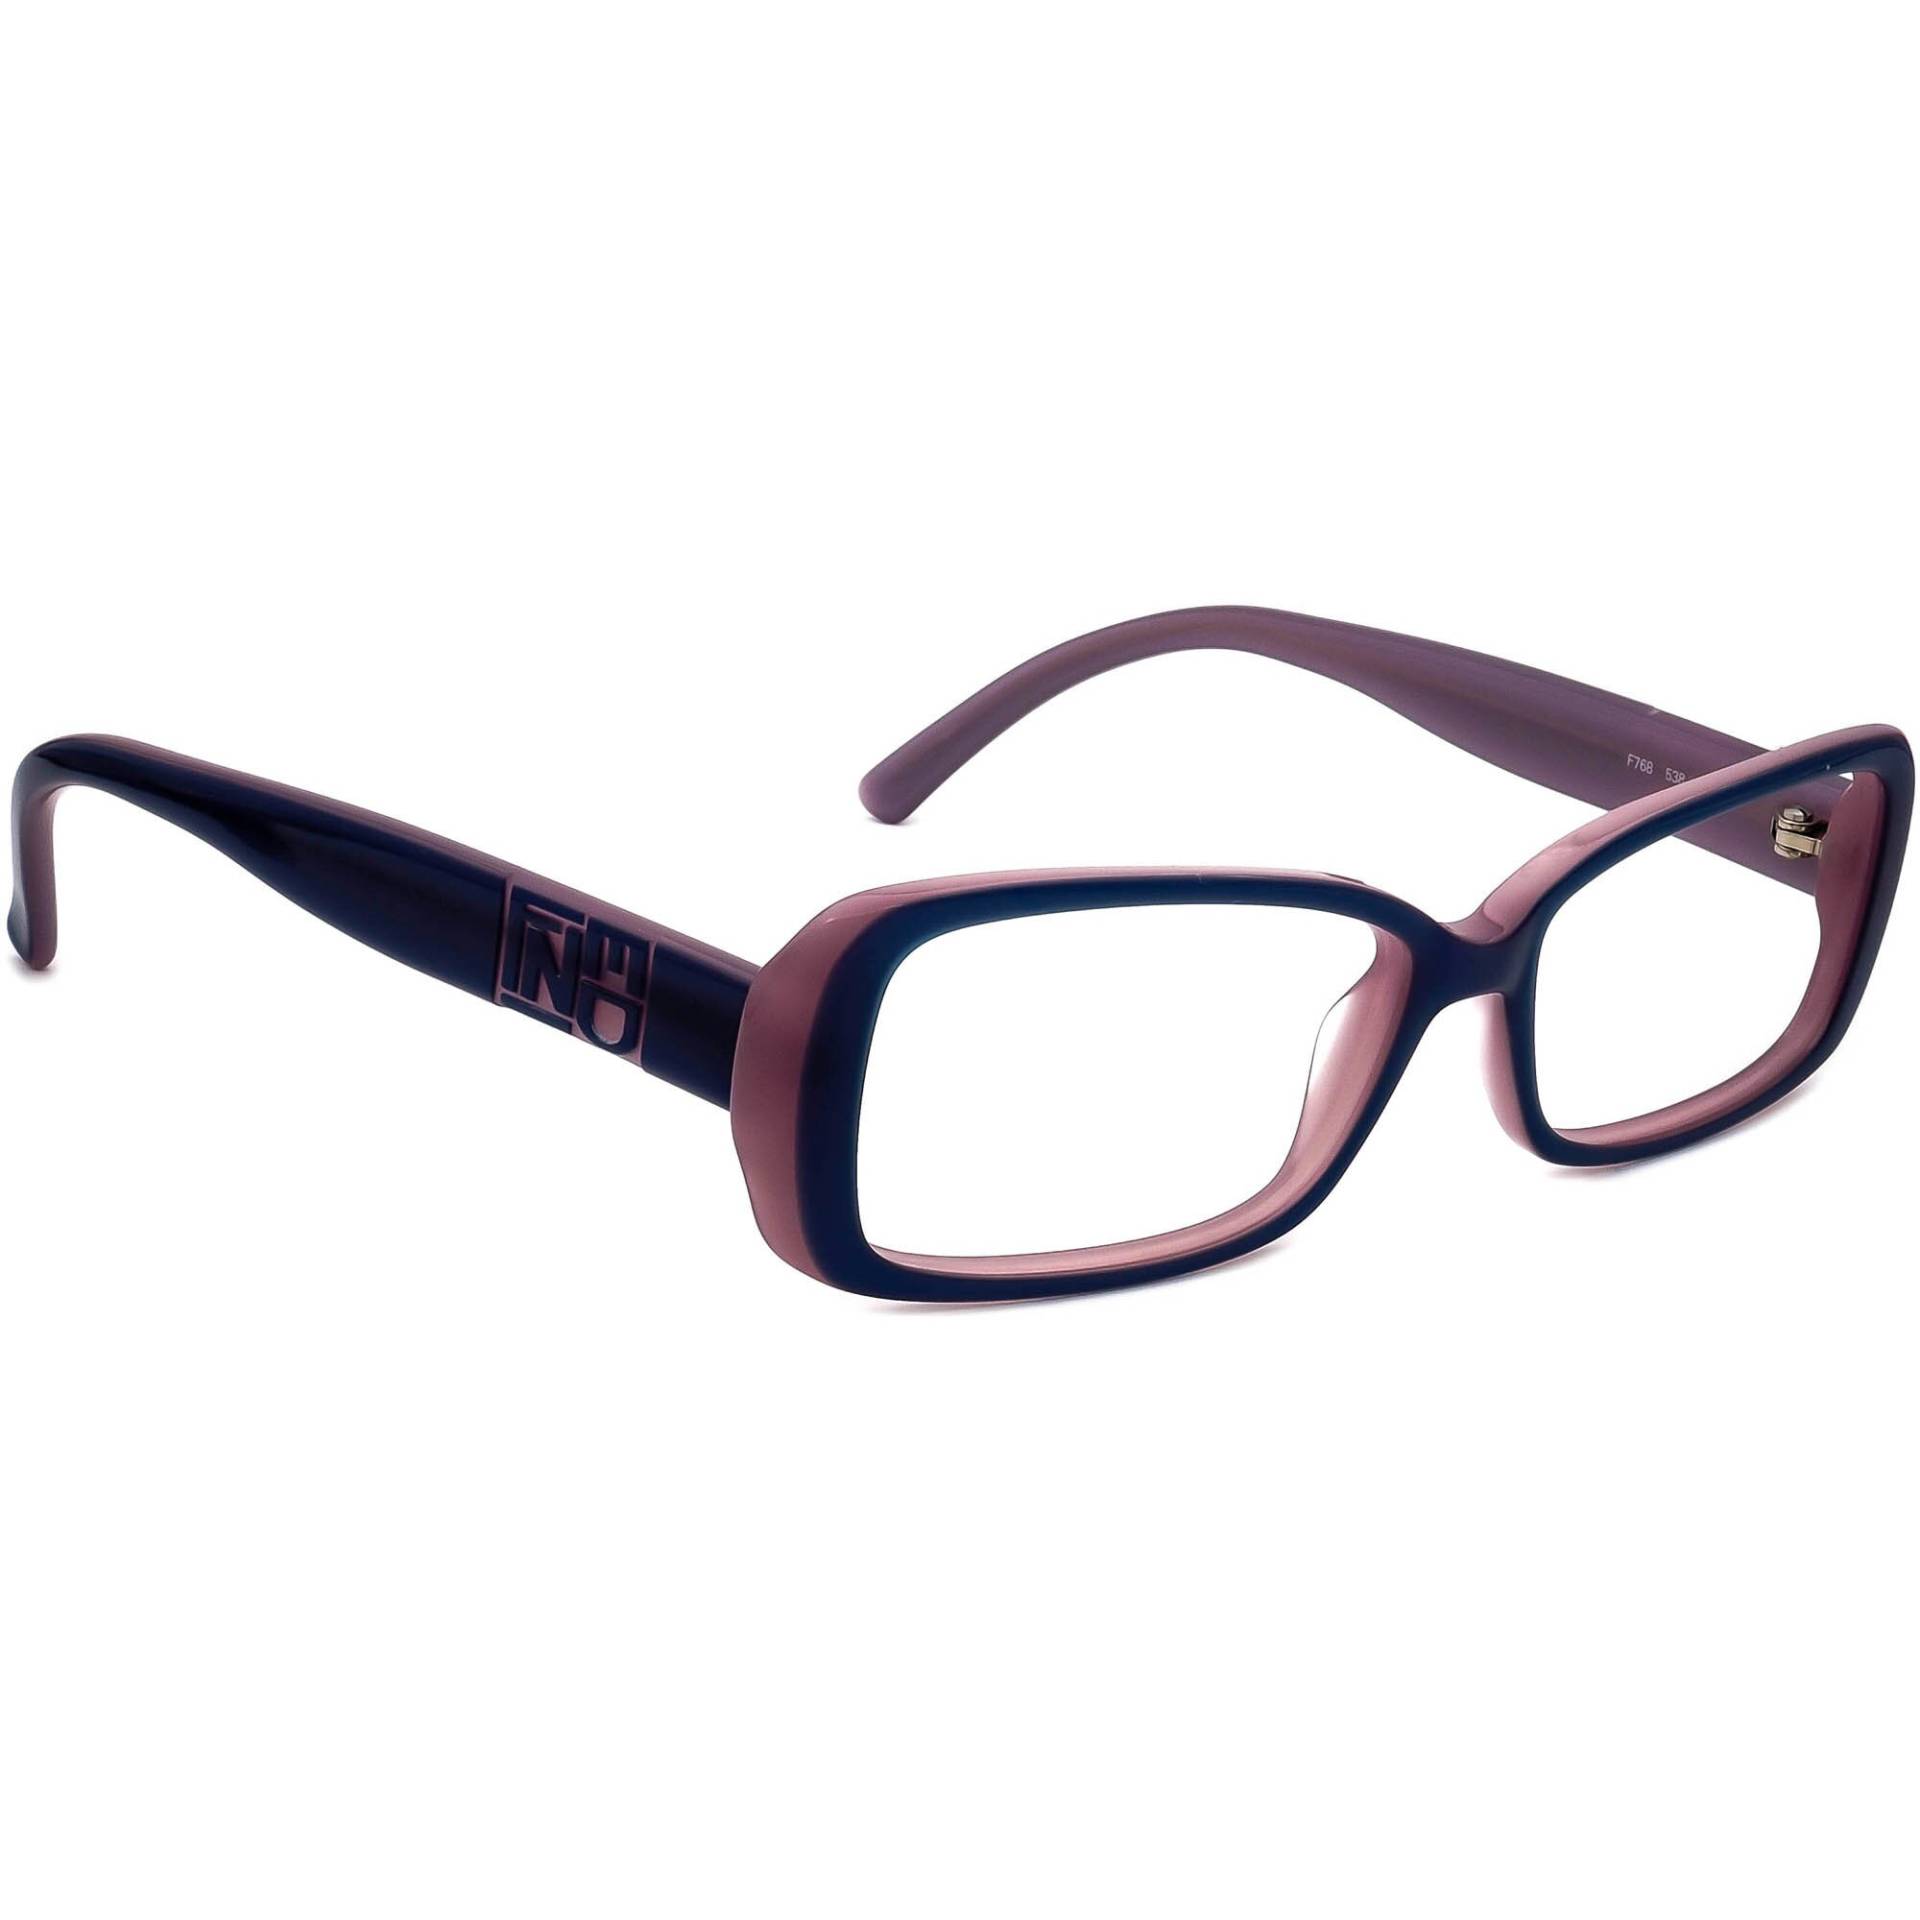 Fendi Damen Brille F768 538 Lila Rechteckrahmen Italien 53[]15 140 von AfsharOptics